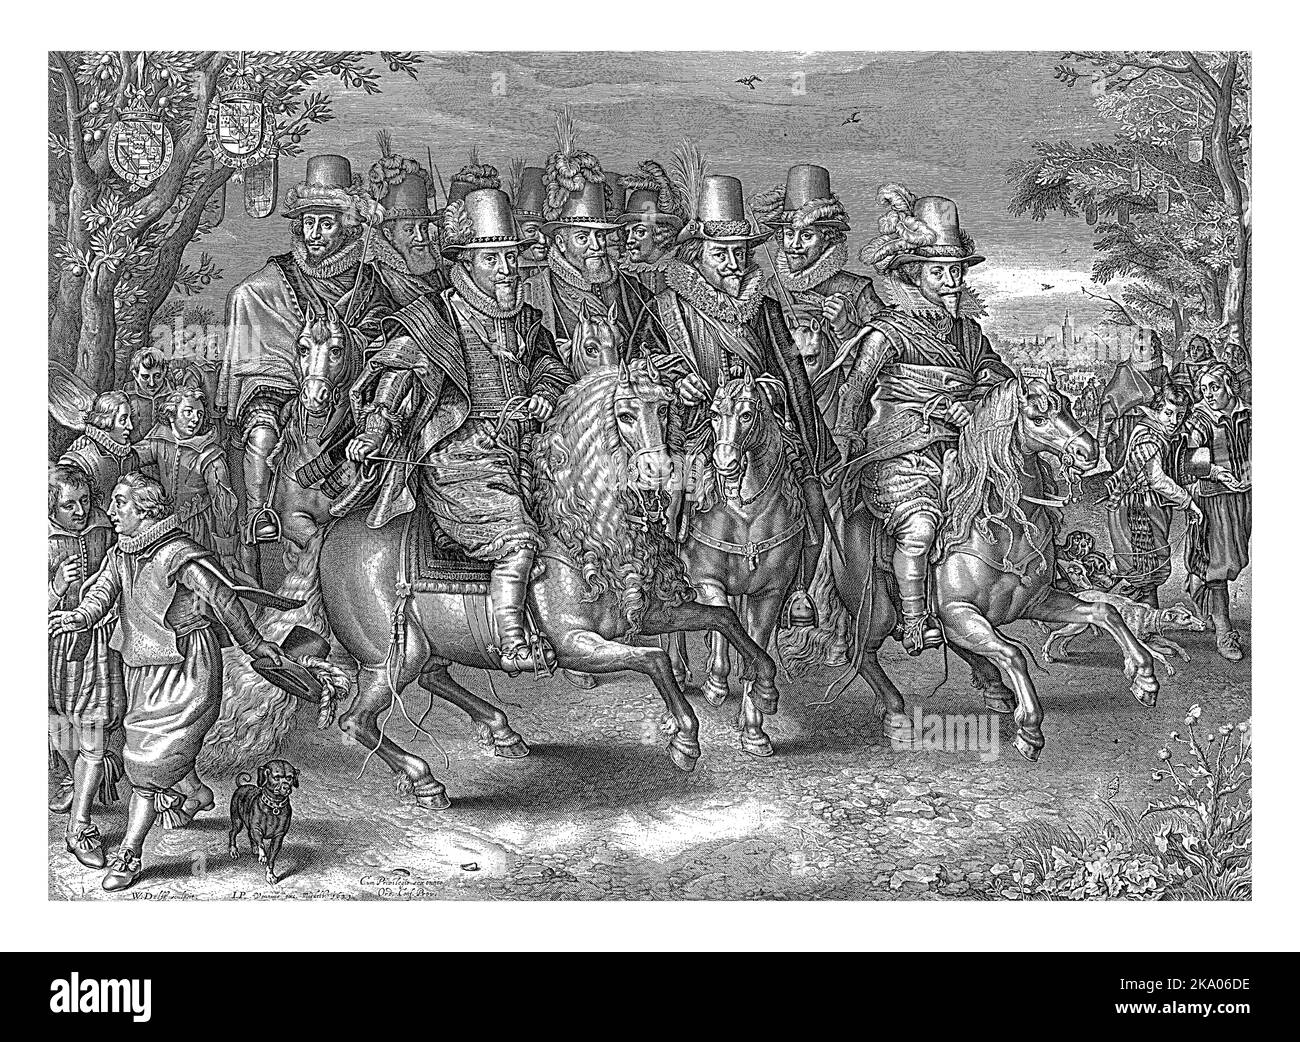 Reiterprozession der sechs Fürsten des Hauses Oranien-Nassau, Willem Jacobsz. Delff, nach Adriaen Pietersz. Van de Venne, 1621 die sechs prin Stockfoto